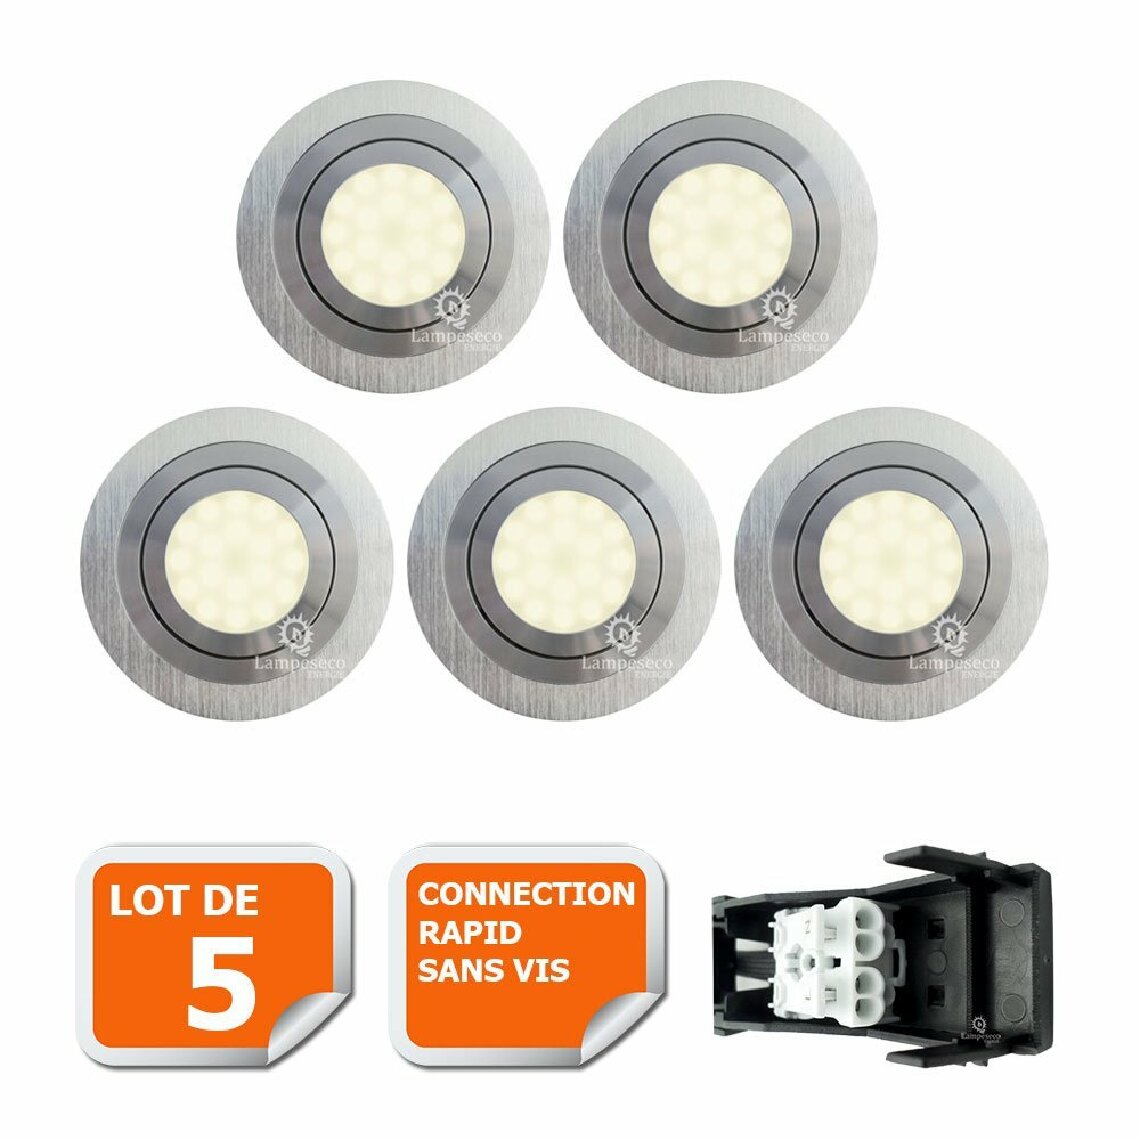 Eurobryte - LOT DE 5 SPOT LED ENCASTRABLE ORIENTABLE 5W eq. 50W, BLANC CHAUD ref.64853000 - Boîtes d'encastrement